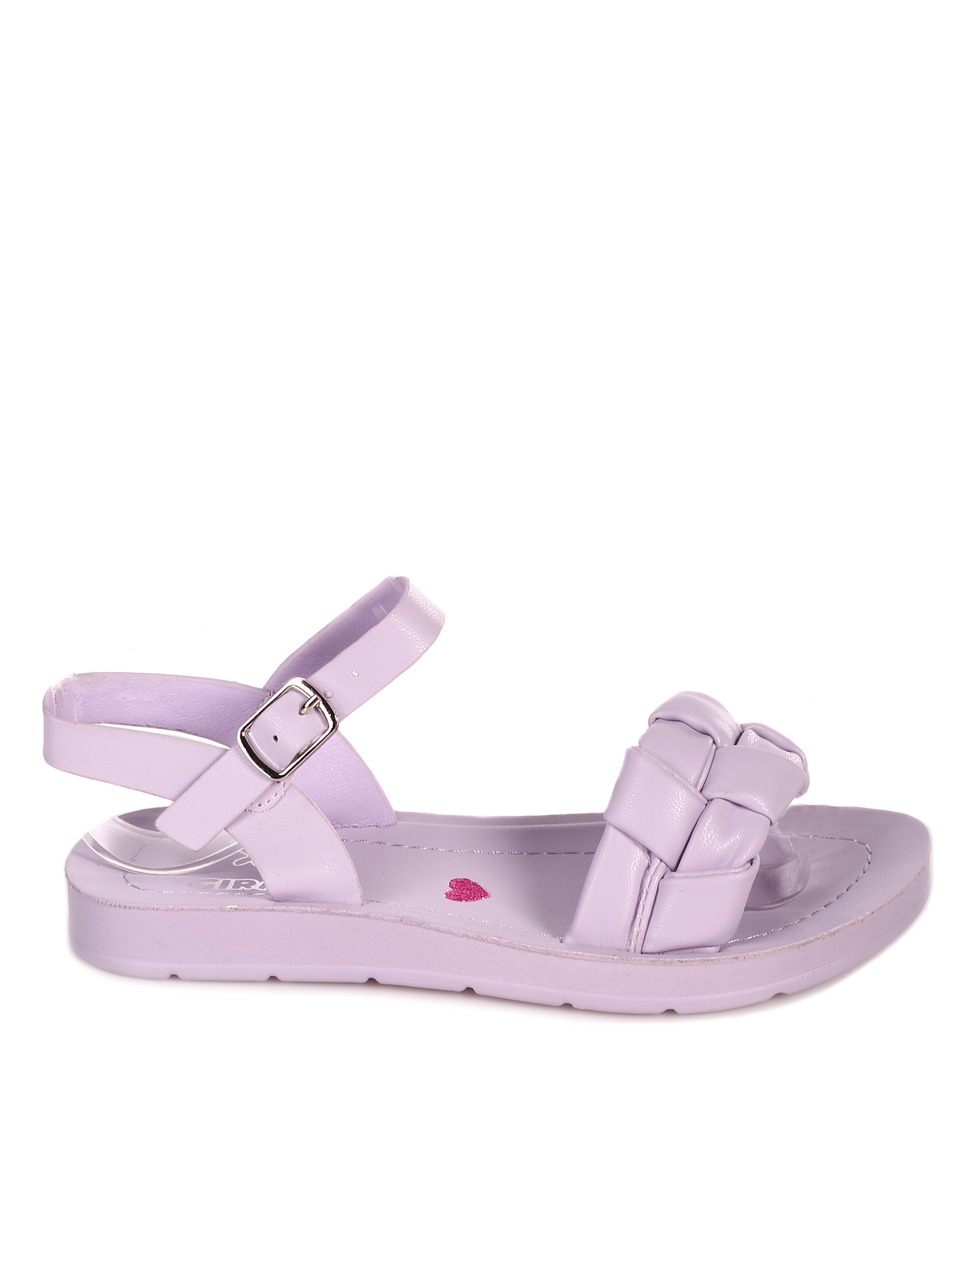 Ежедневни детски комфортни сандали в лилаво 17F-23240 purple